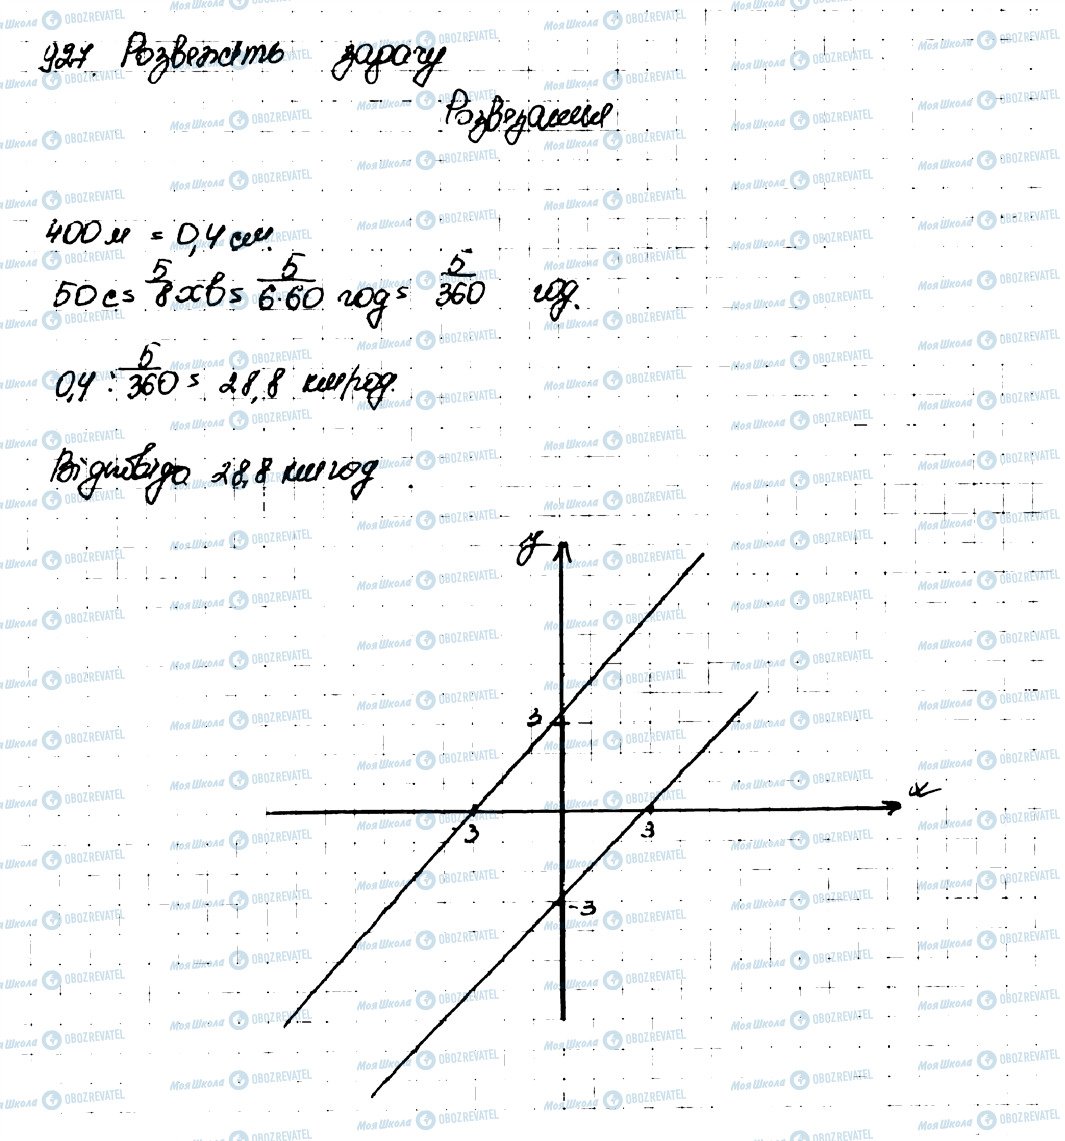 ГДЗ Алгебра 9 класс страница 927